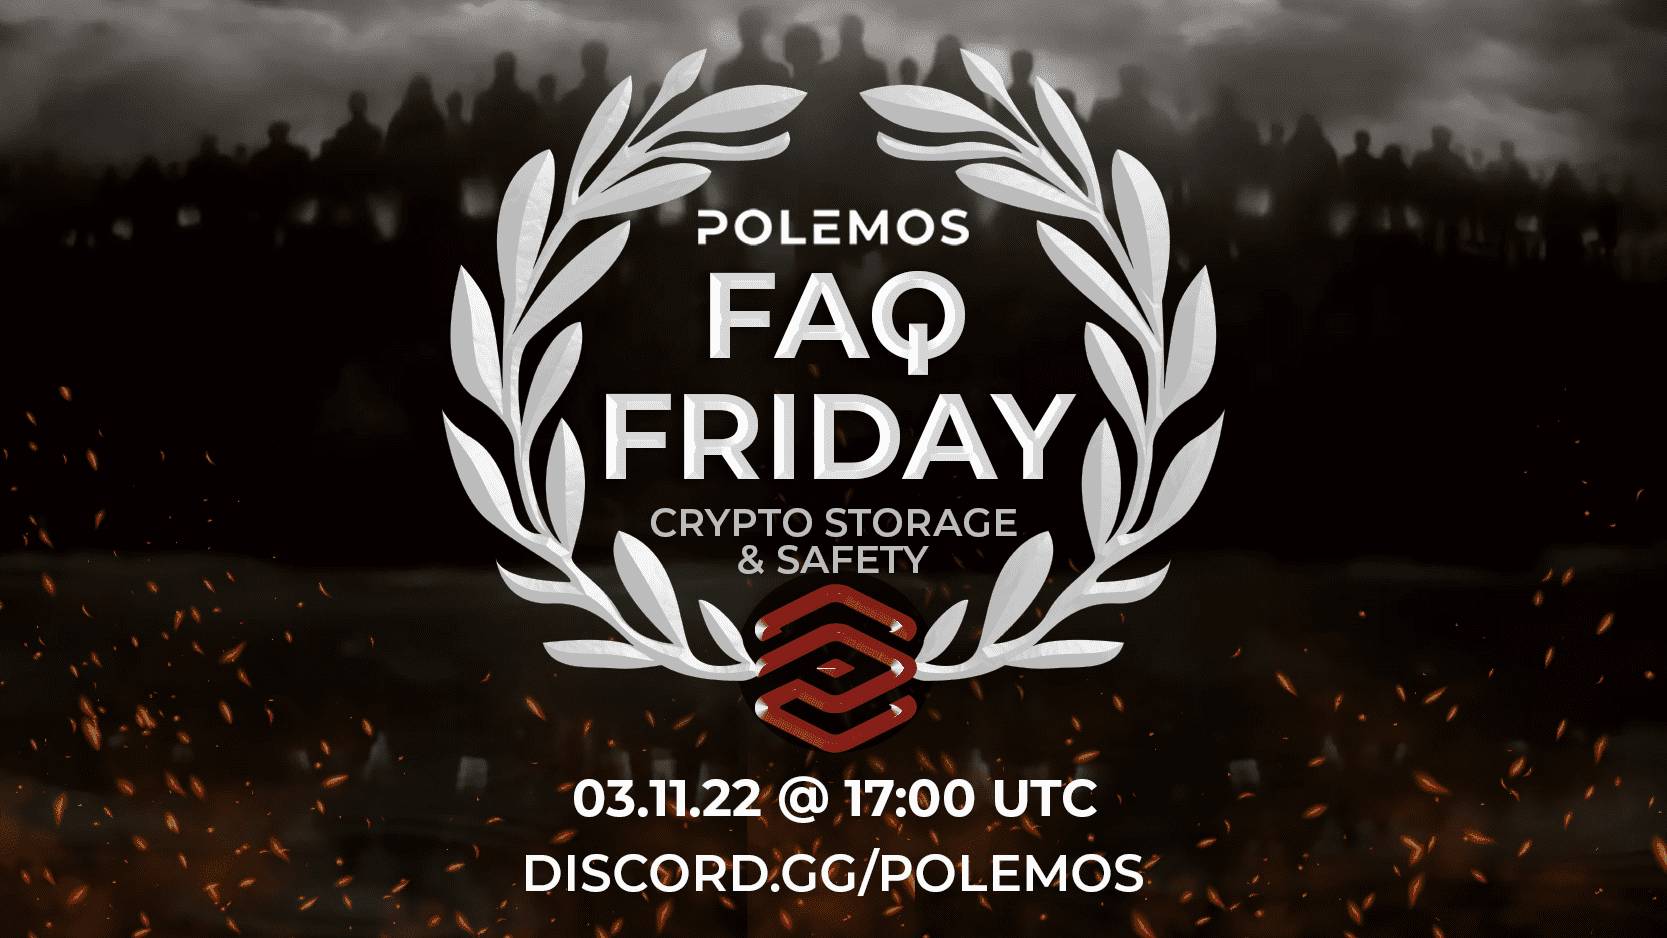 FAQ Friday #2 - Crypto Storage & Safety | Polemos